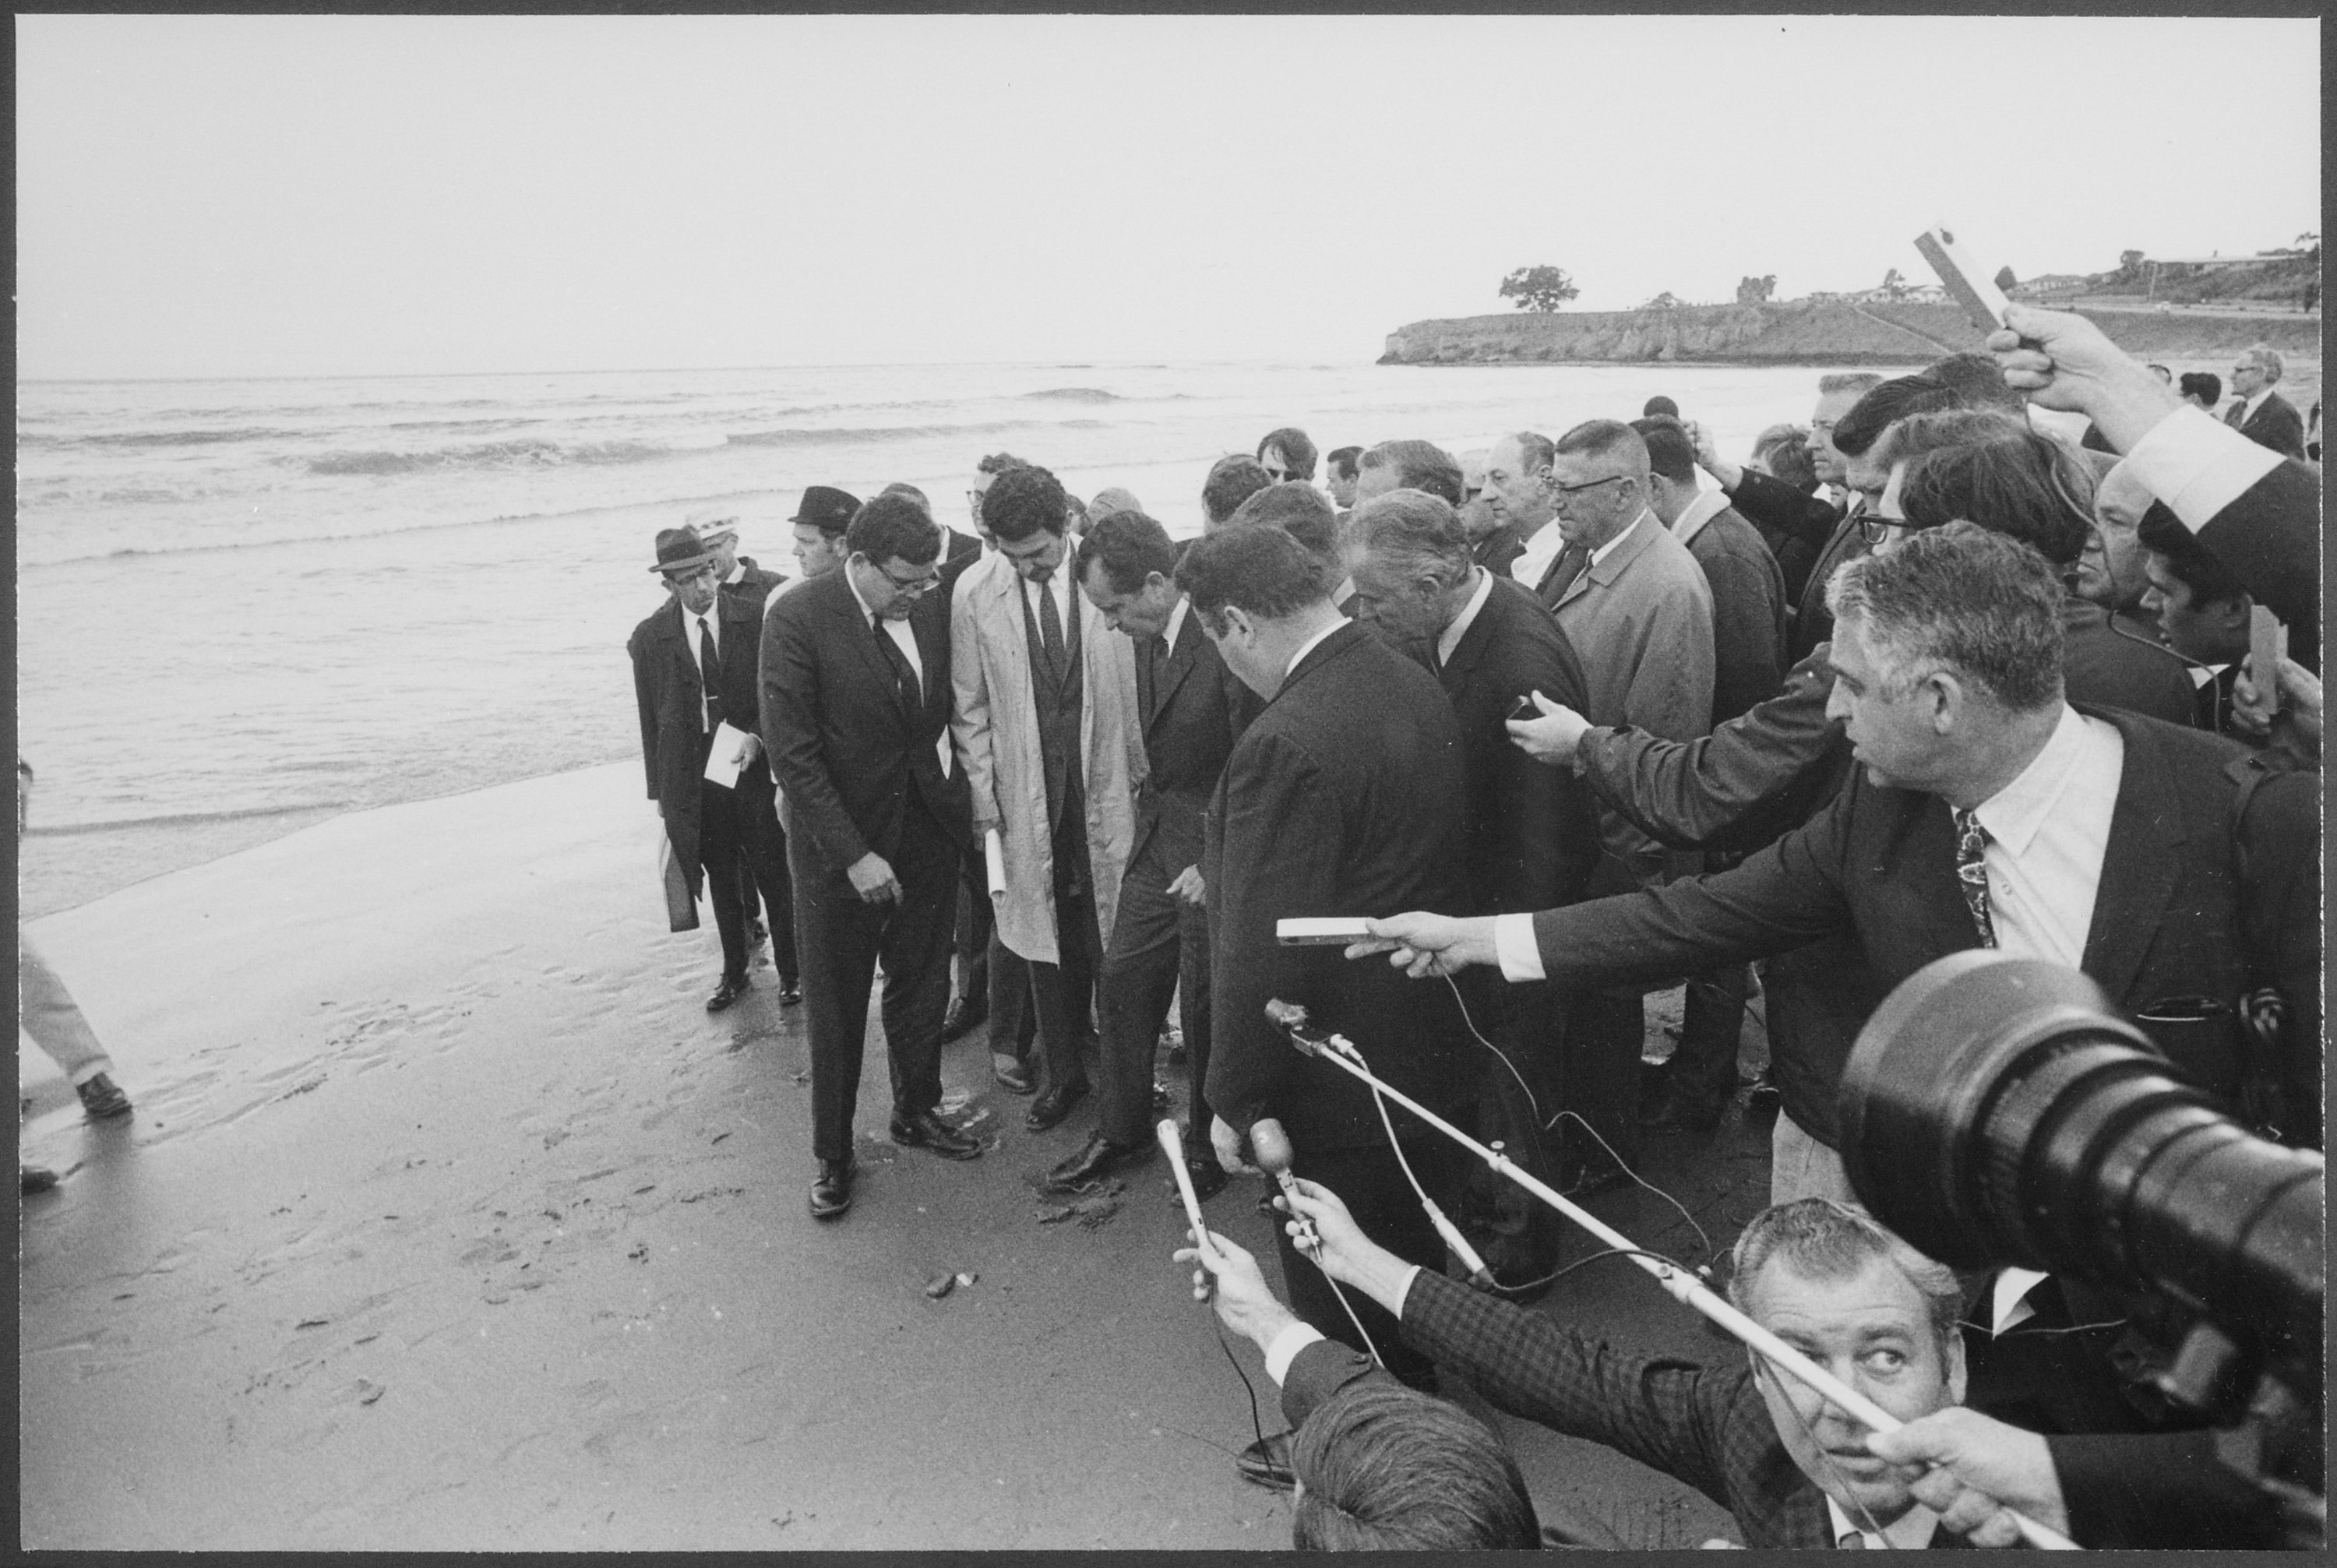 Группа репортеров следует за президентом Никсоном на пляже, упираясь ногами в залитый нефтью песок.